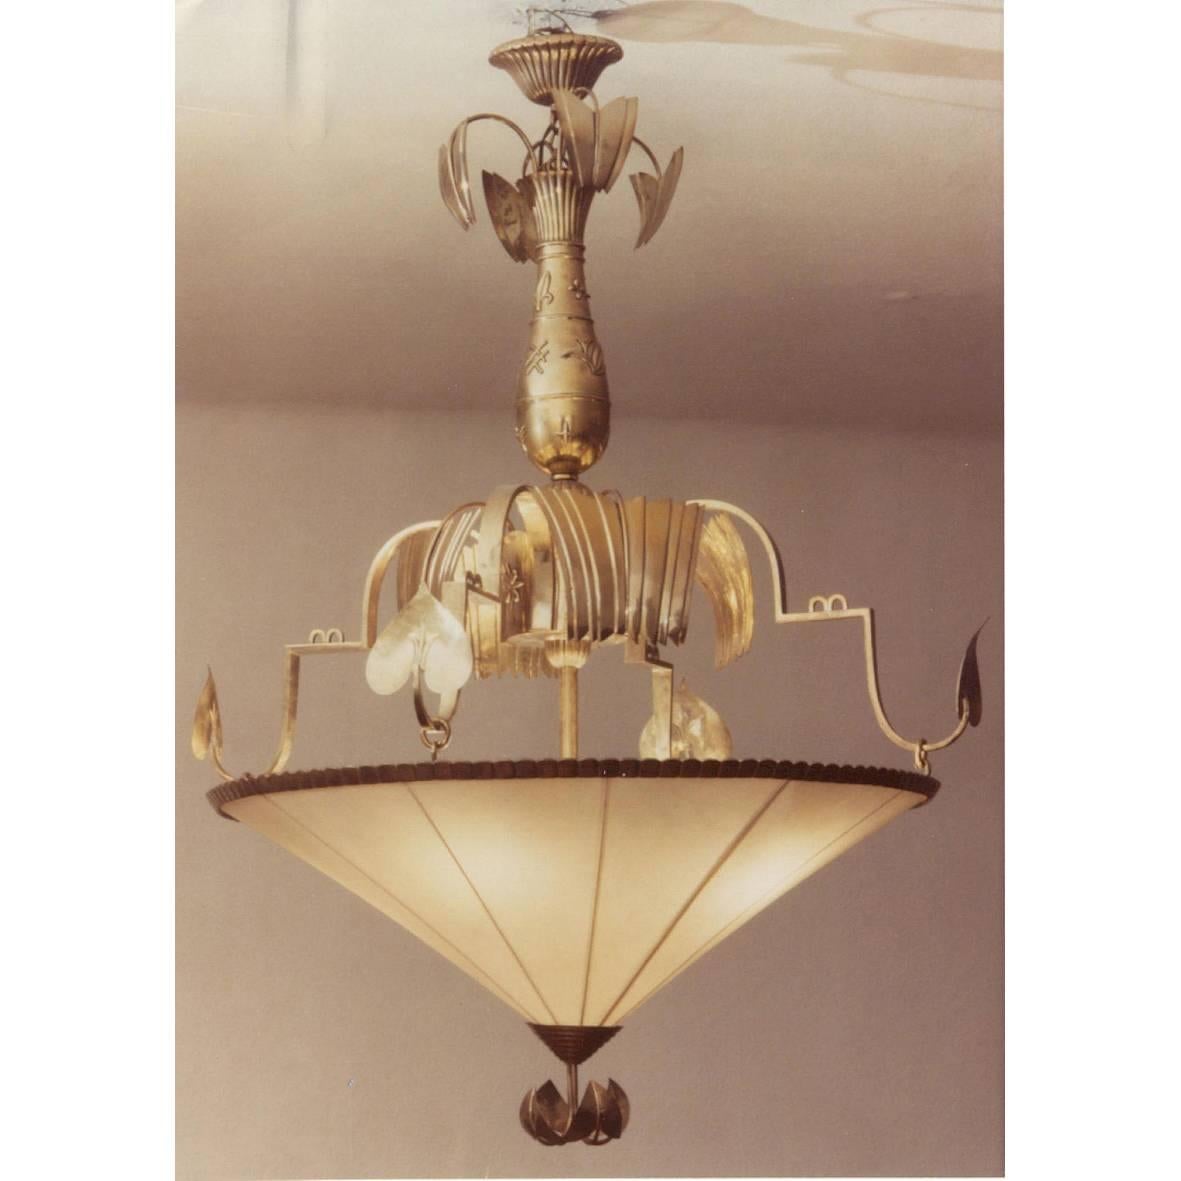 Ursprünglich im Besitz von Woka, wurde die Lampe im Wiener Auktionshaus 